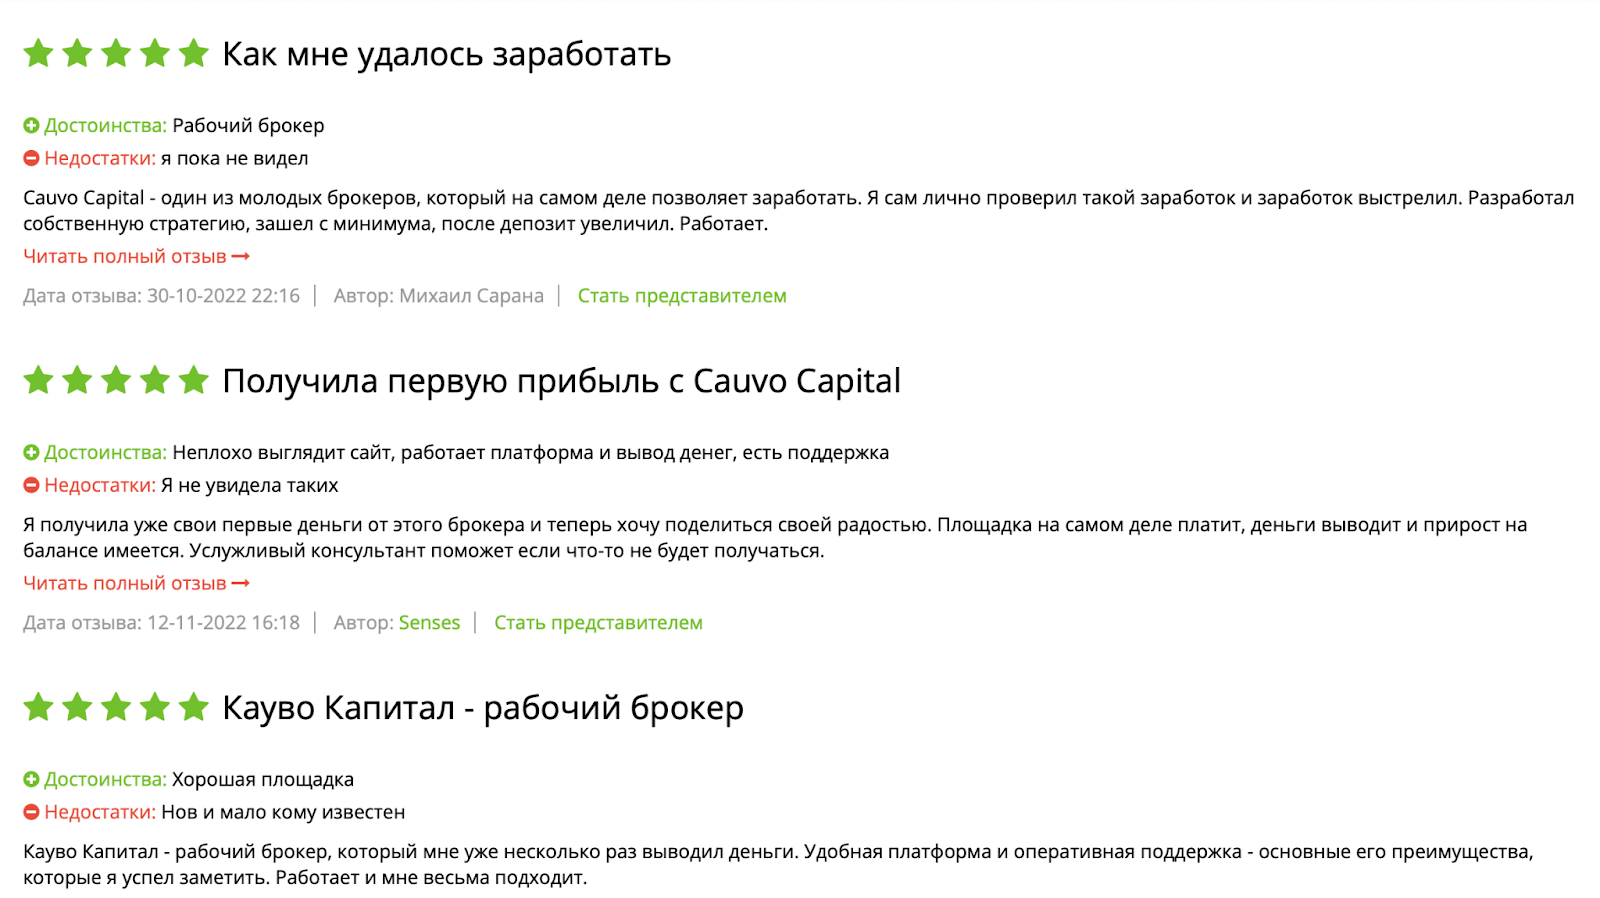 Cauvo Capital: отзывы клиентов о работе компании в 2022 году